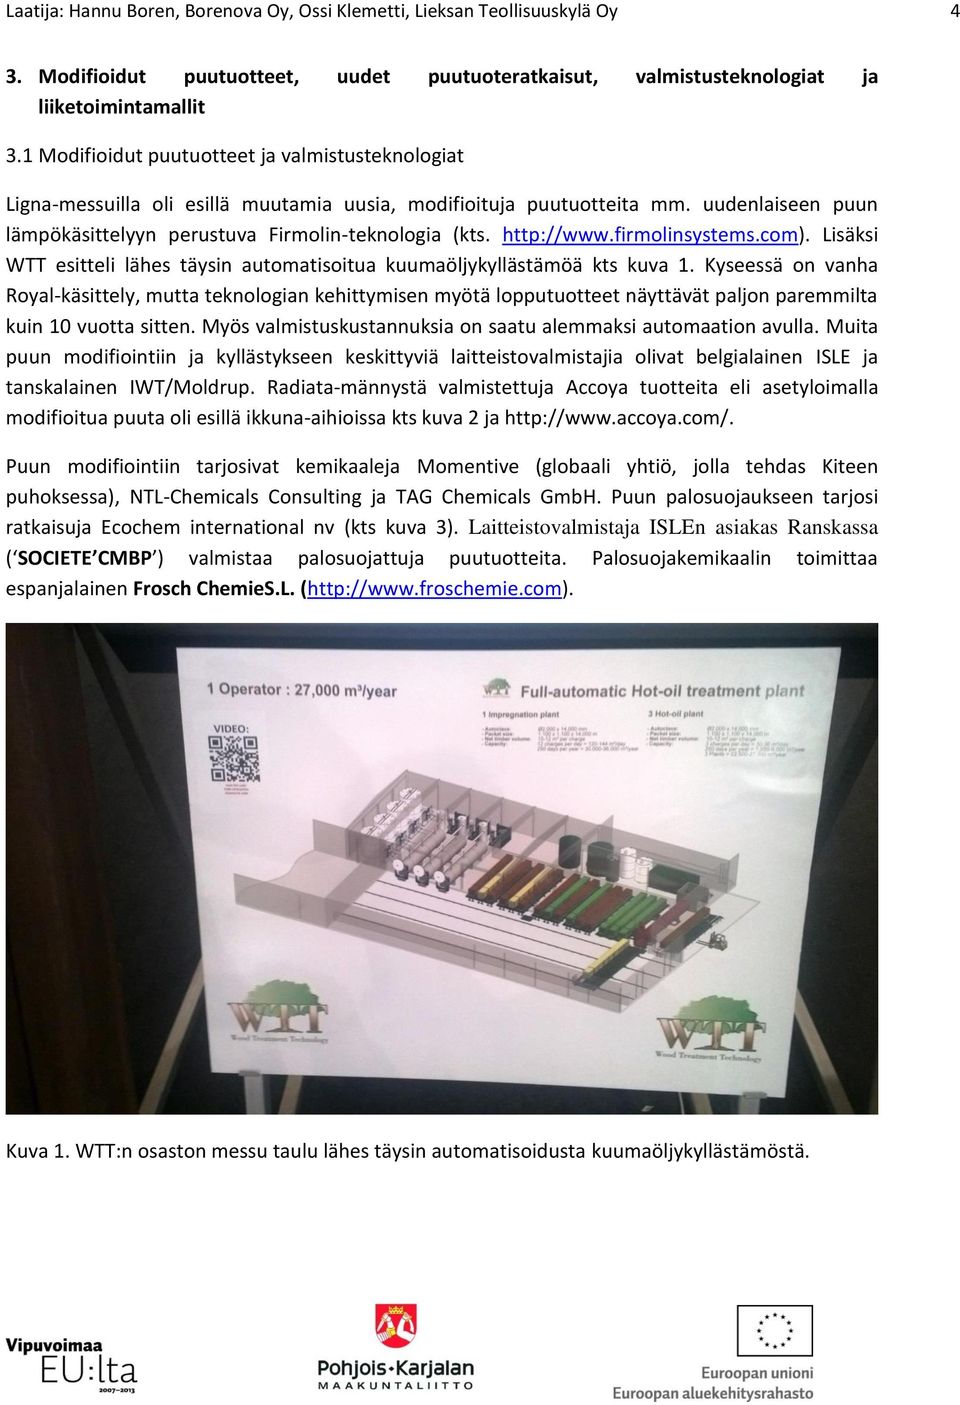 http://www.firmolinsystems.com). Lisäksi WTT esitteli lähes täysin automatisoitua kuumaöljykyllästämöä kts kuva 1.